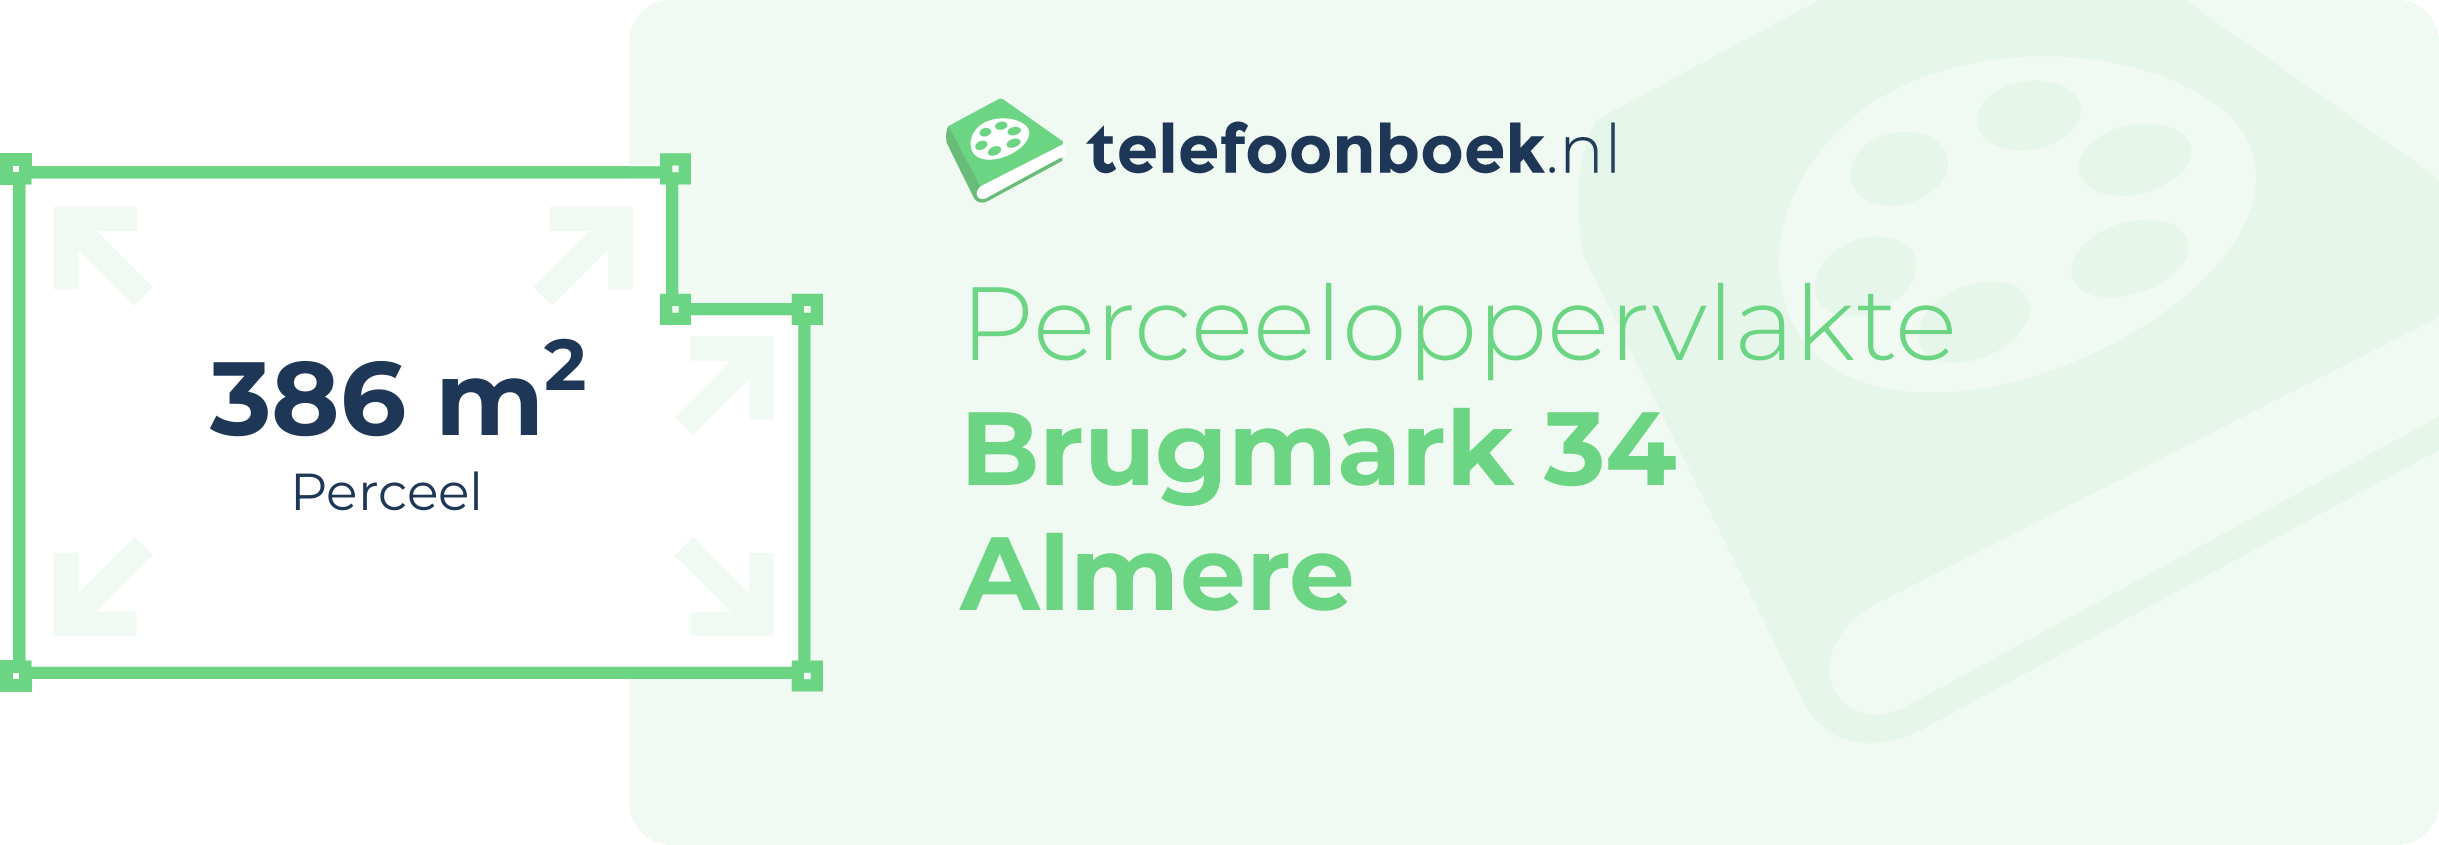 Perceeloppervlakte Brugmark 34 Almere